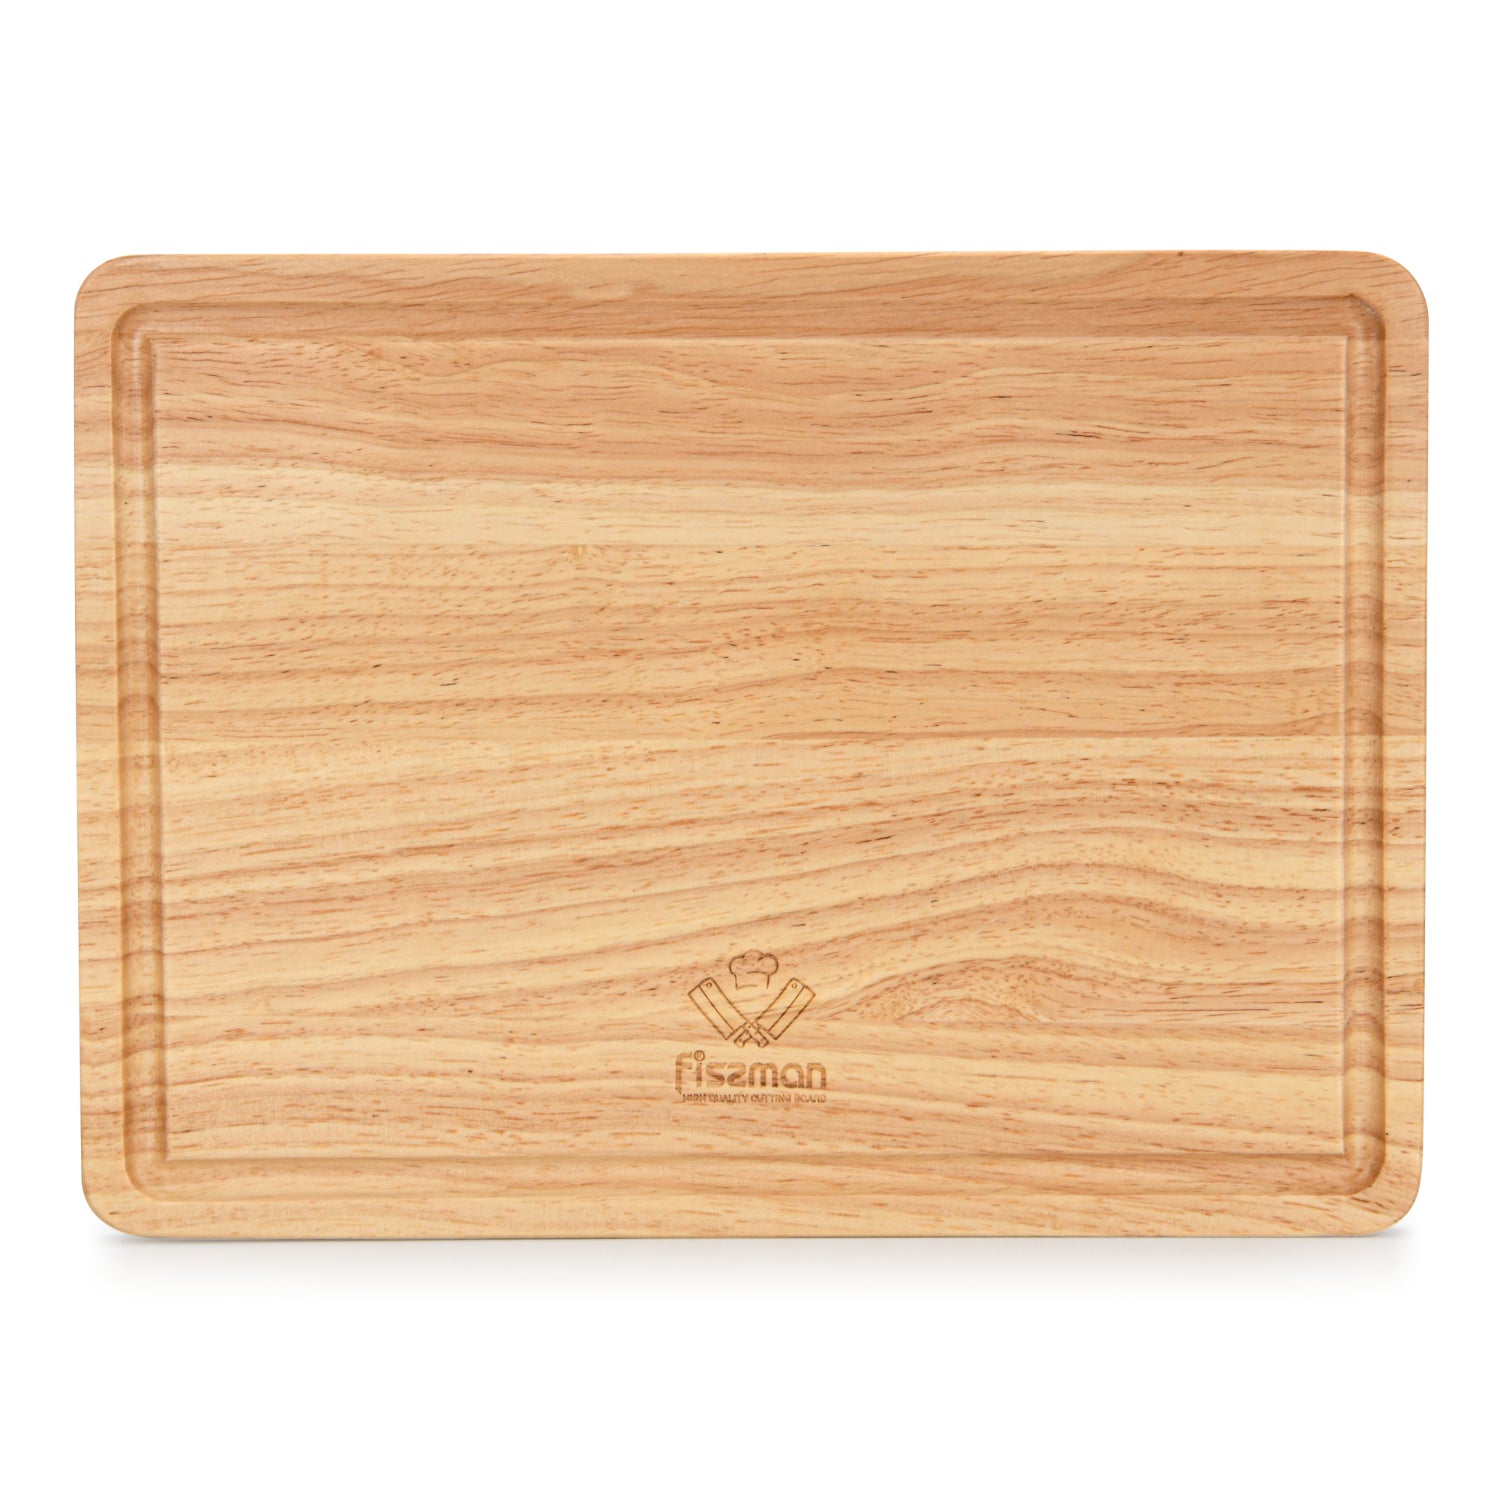 Fissman Cutting Board 30x22x1.5cm Rubber Wood